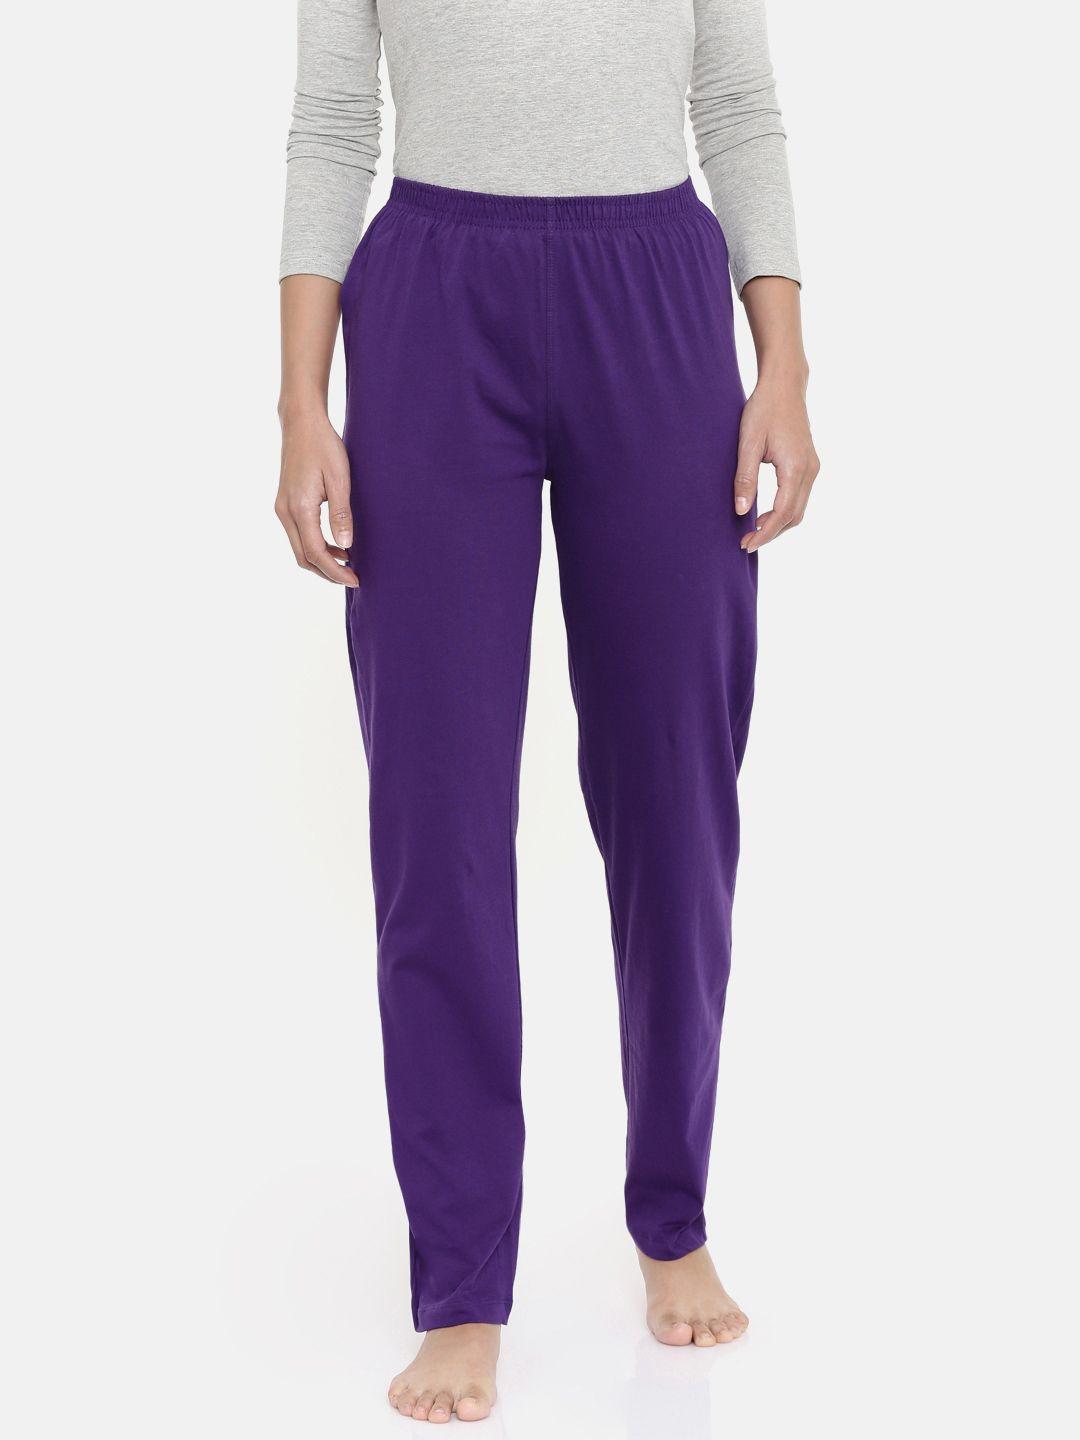 zebu women purple solid lounge pants 299_1zw_ppp_pln_pur_xl